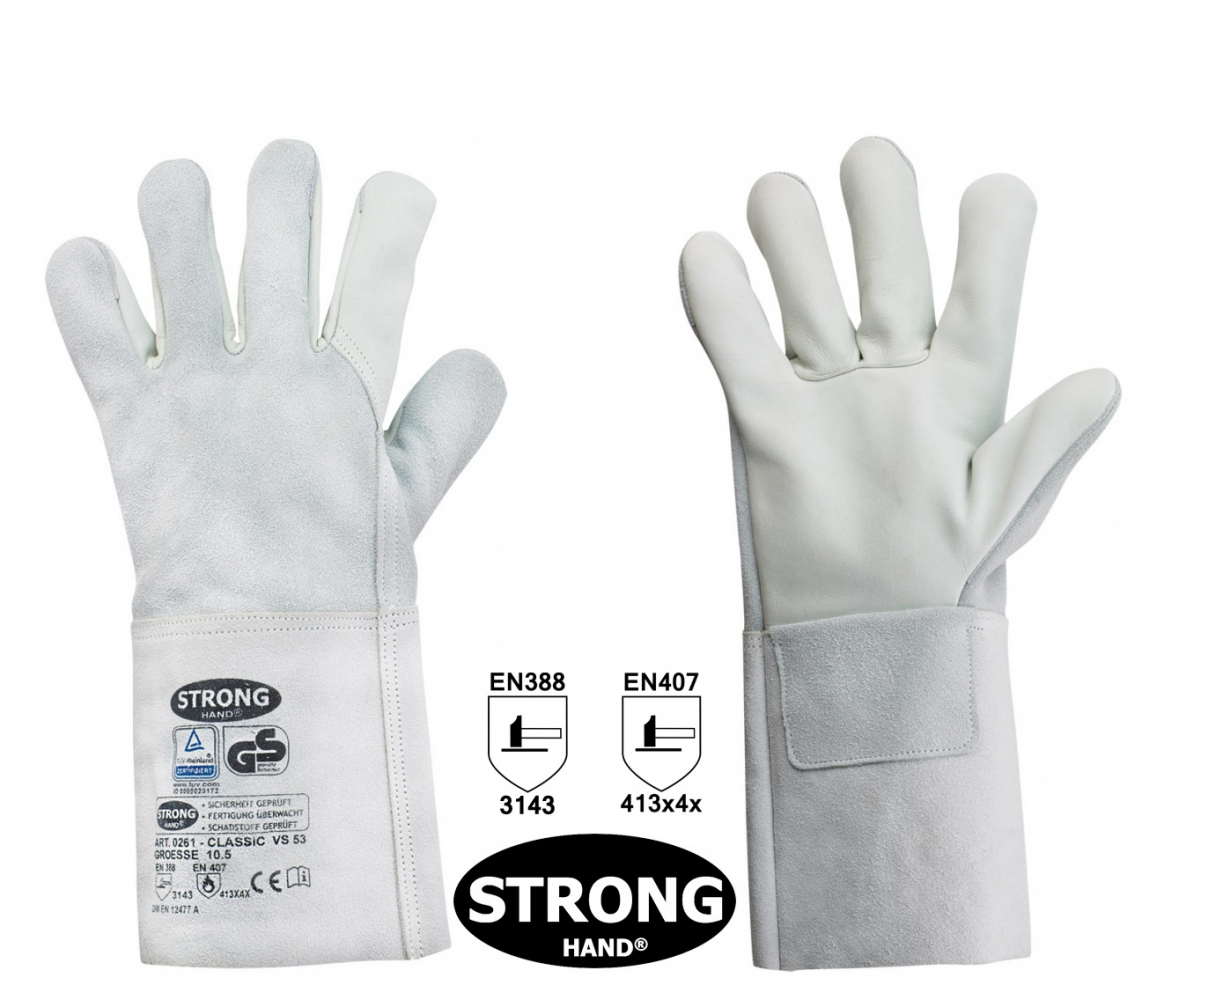 pics/Feldtmann 2016/Handschutz/stronghand-0261-vs53-leather-safety-gloves-for-welder.jpg